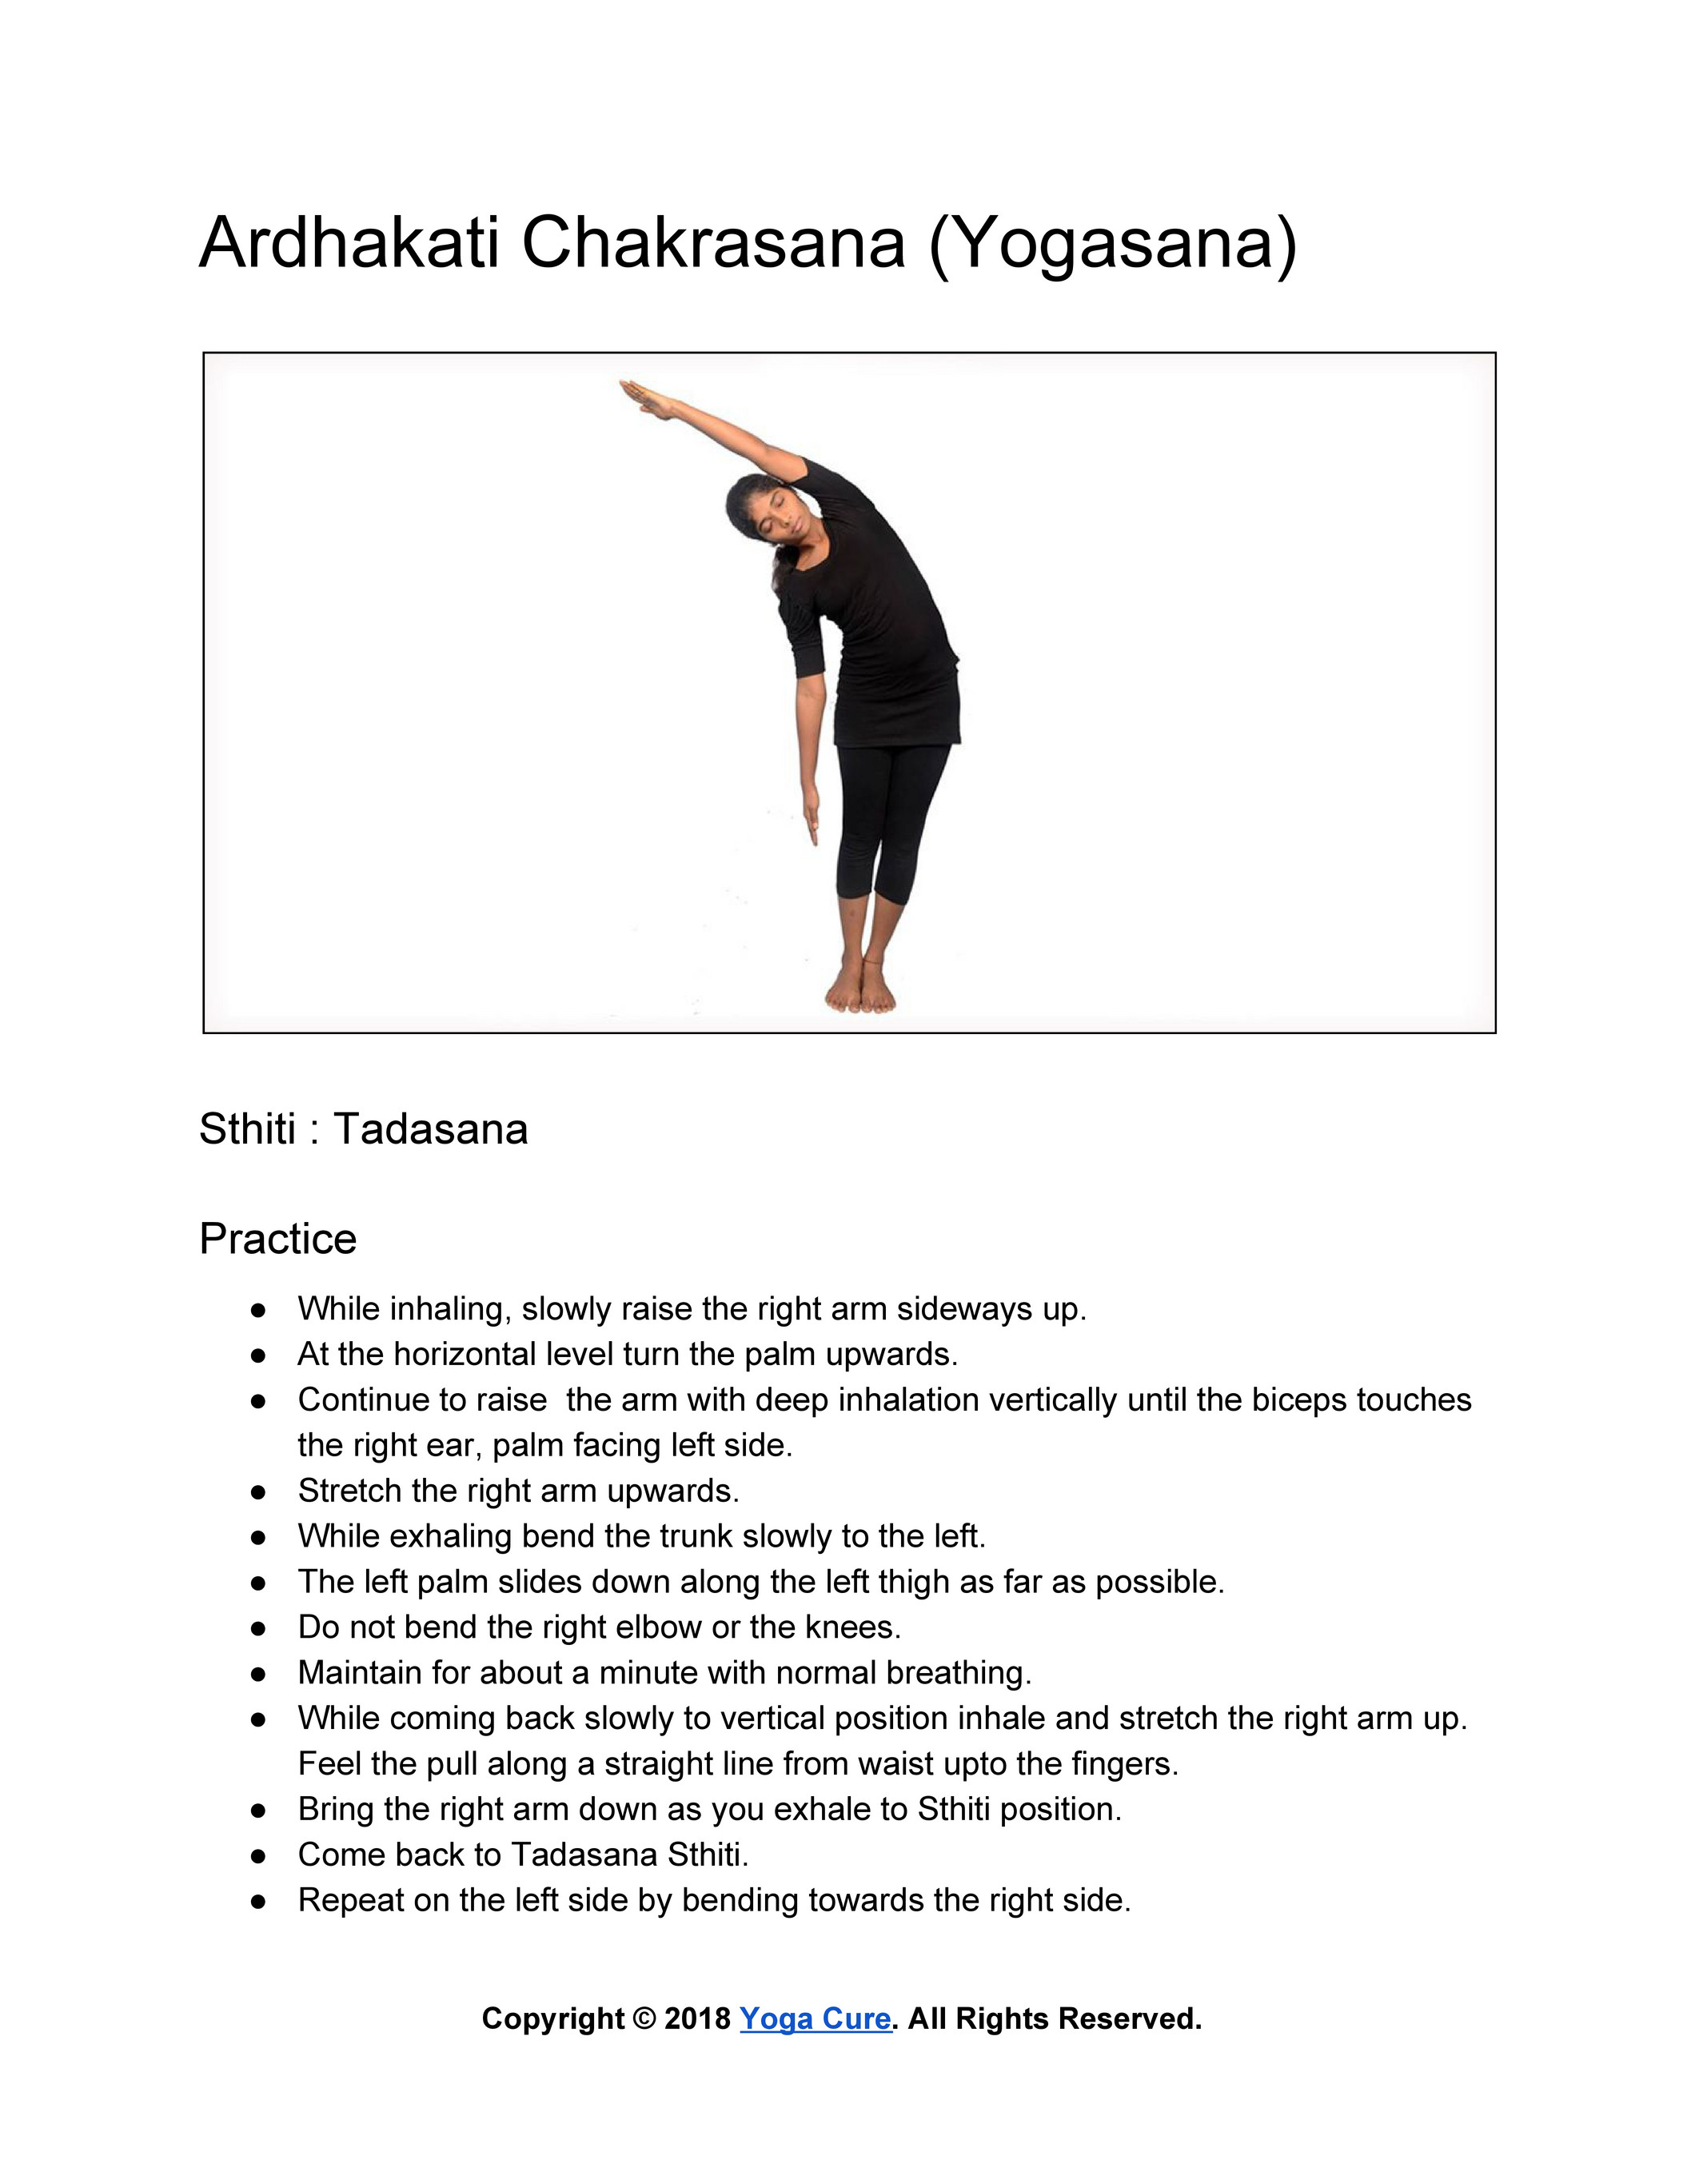 Mastering Chakrasana Pose: Steps, Benefits, and Variations